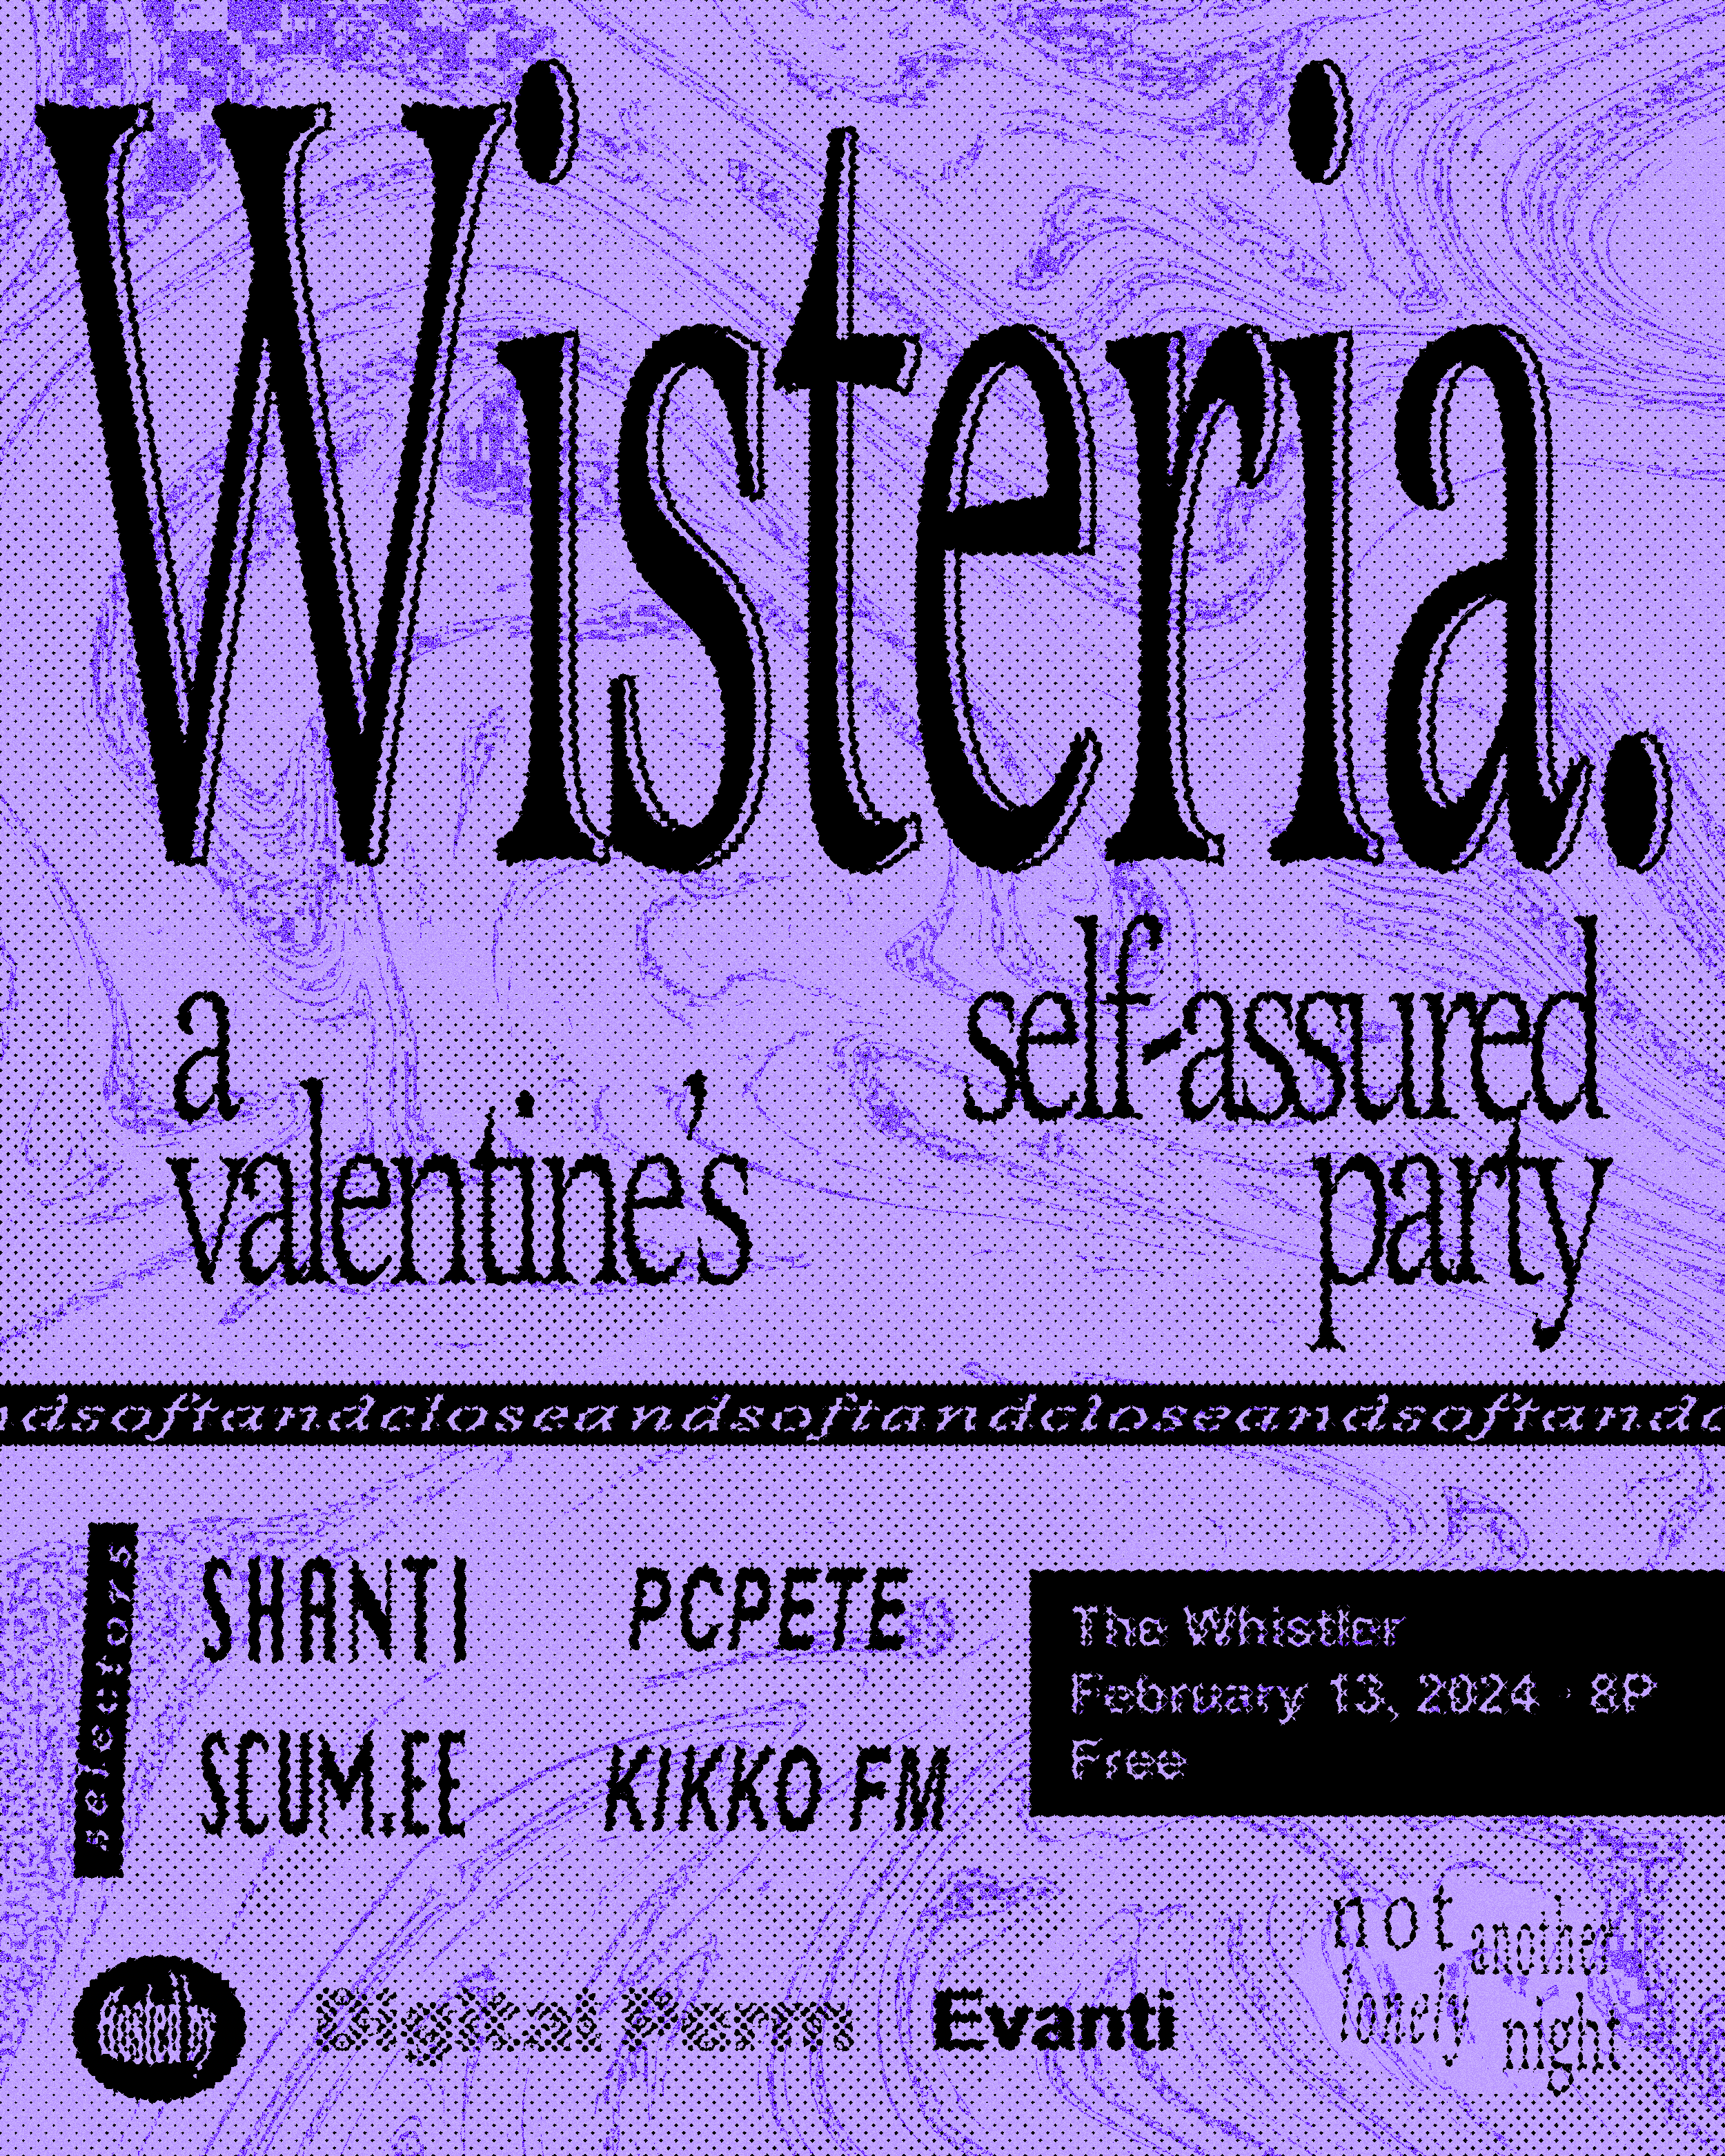 Wisteria: A Wistful Valentine's Party - Página frontal